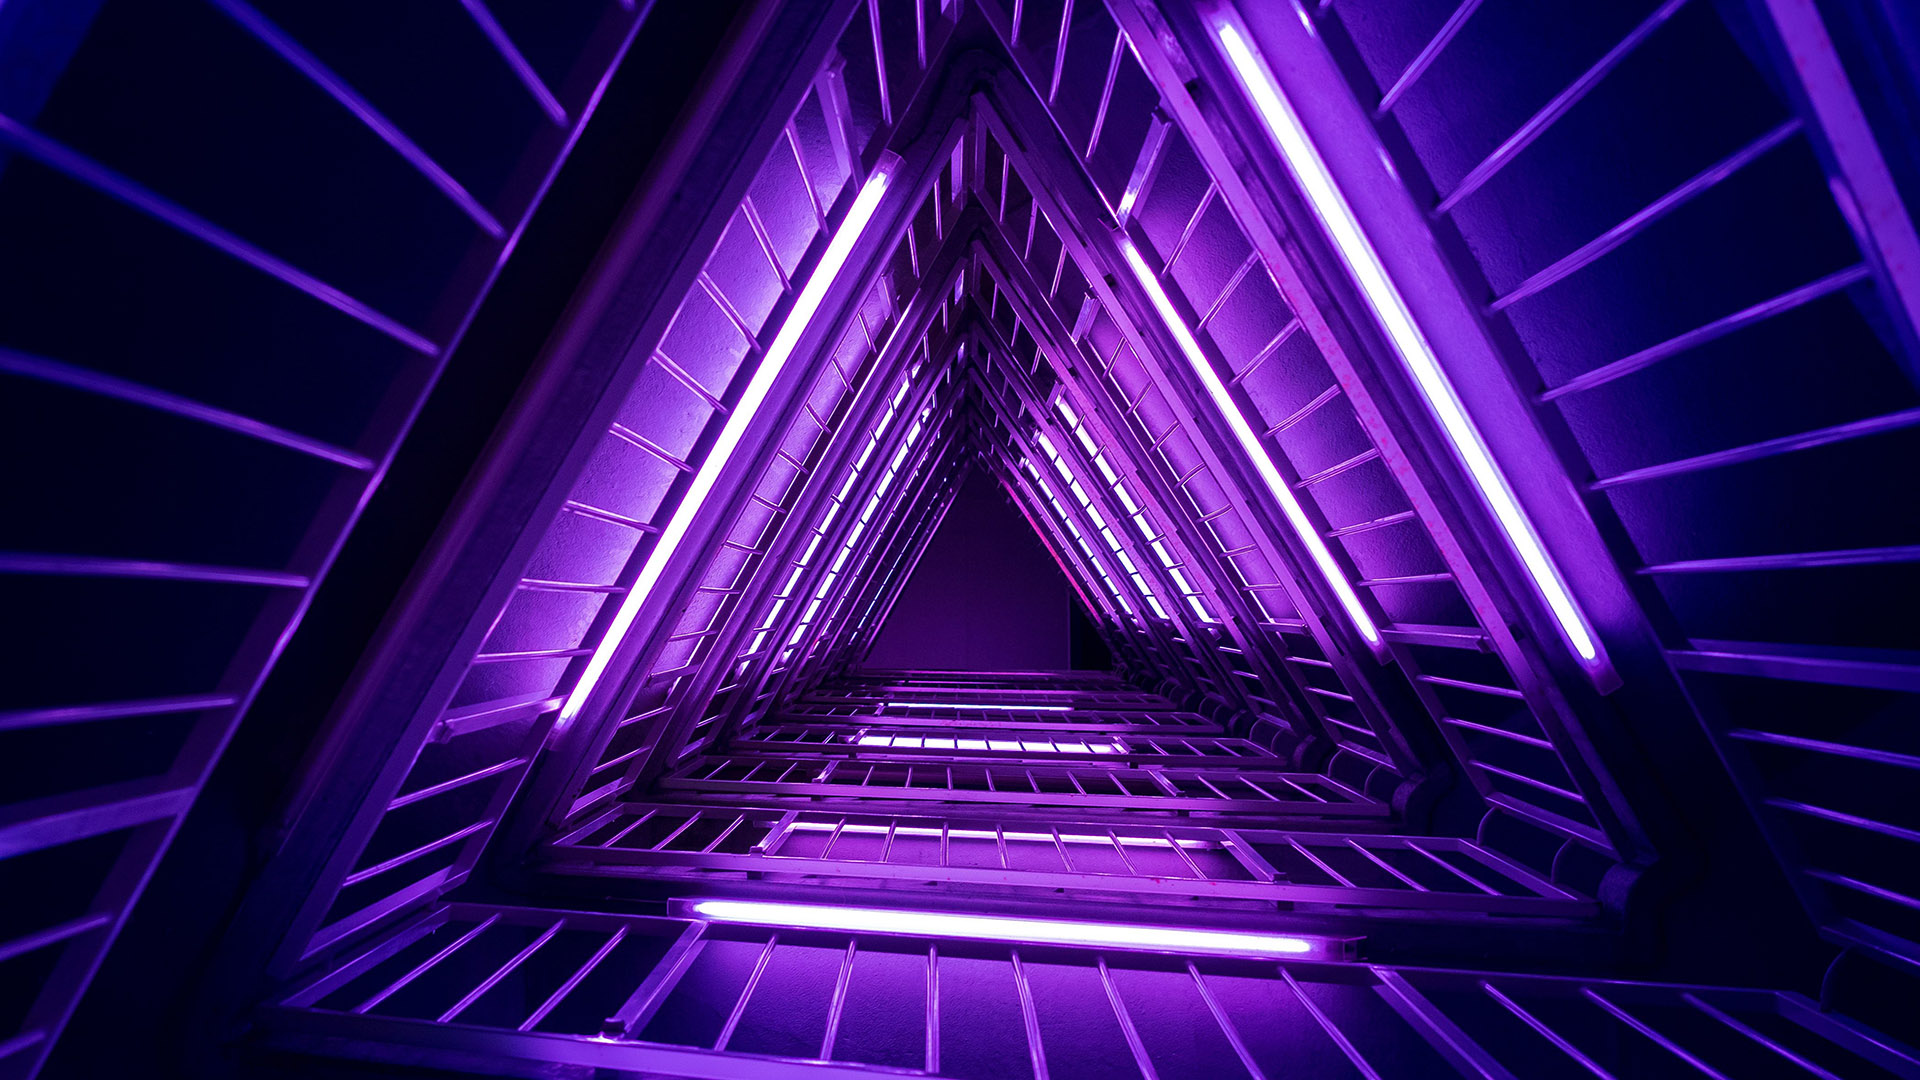 Purple Wallpaper 1